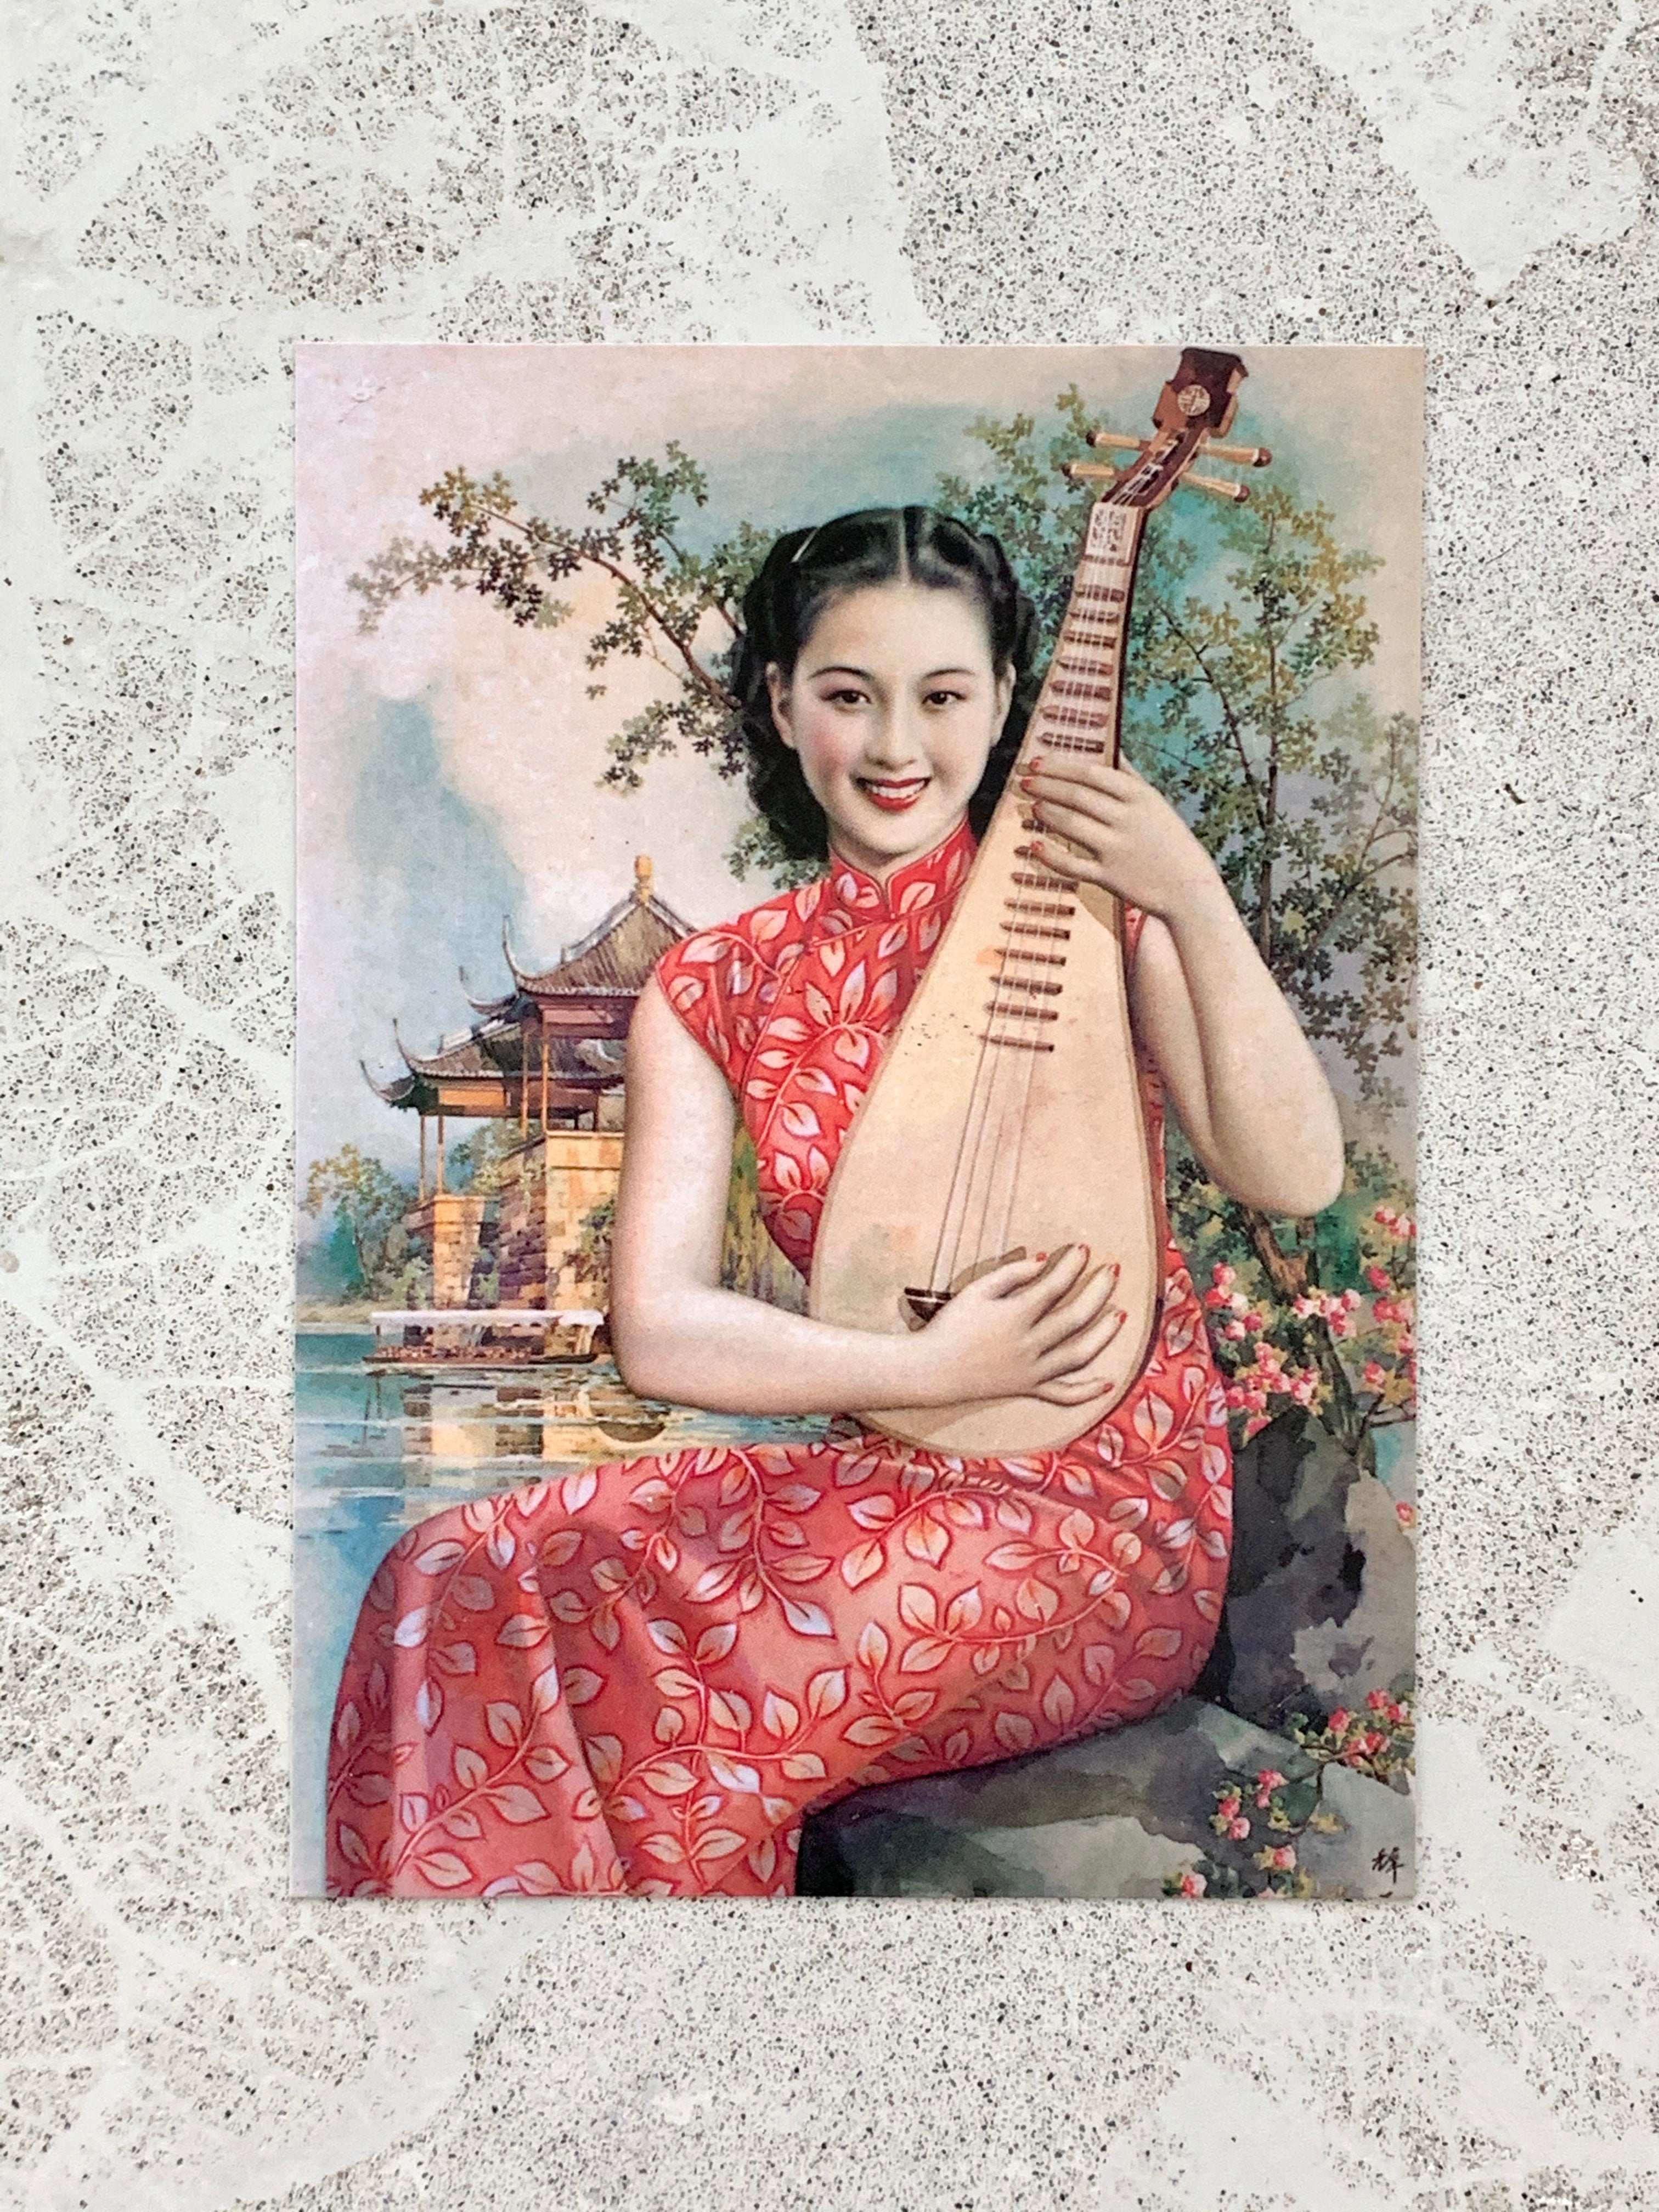 Postcard Art, Asian Woman Playing Mandolin in Silk Dress w/ Leaf Pattern